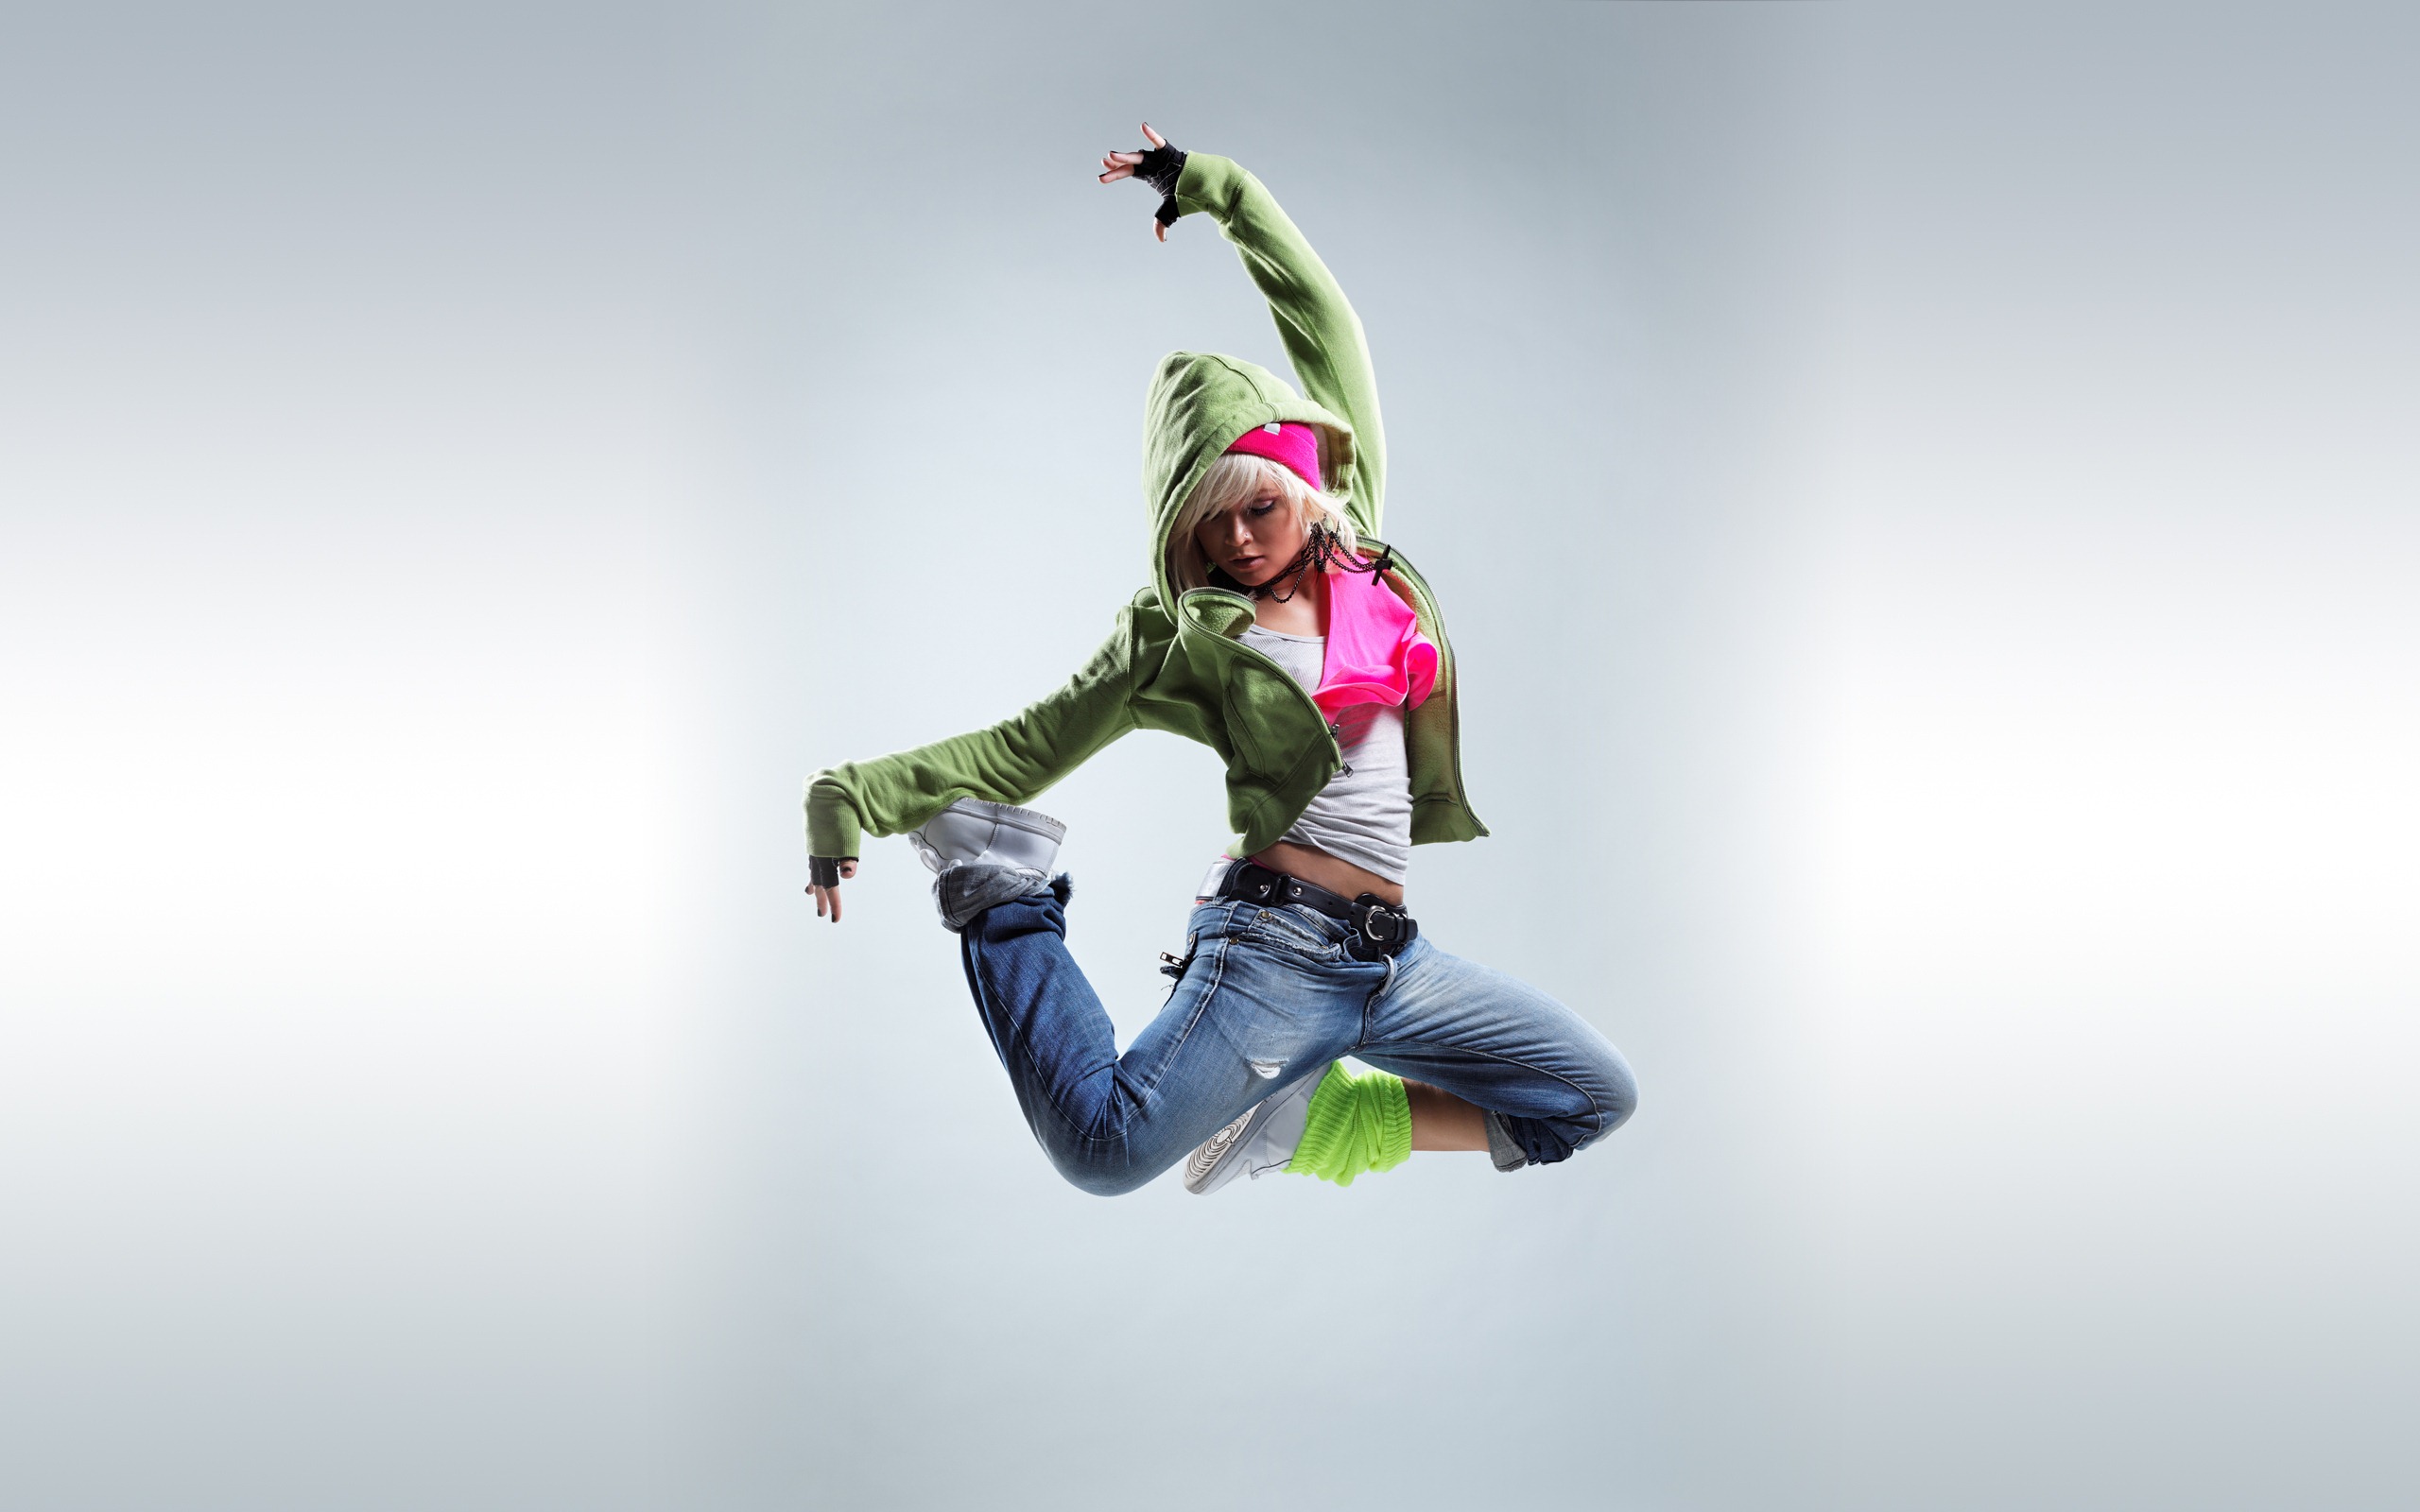 hip hop mädchen wallpaper,springen,spaß,extremsport,glücklich,übung